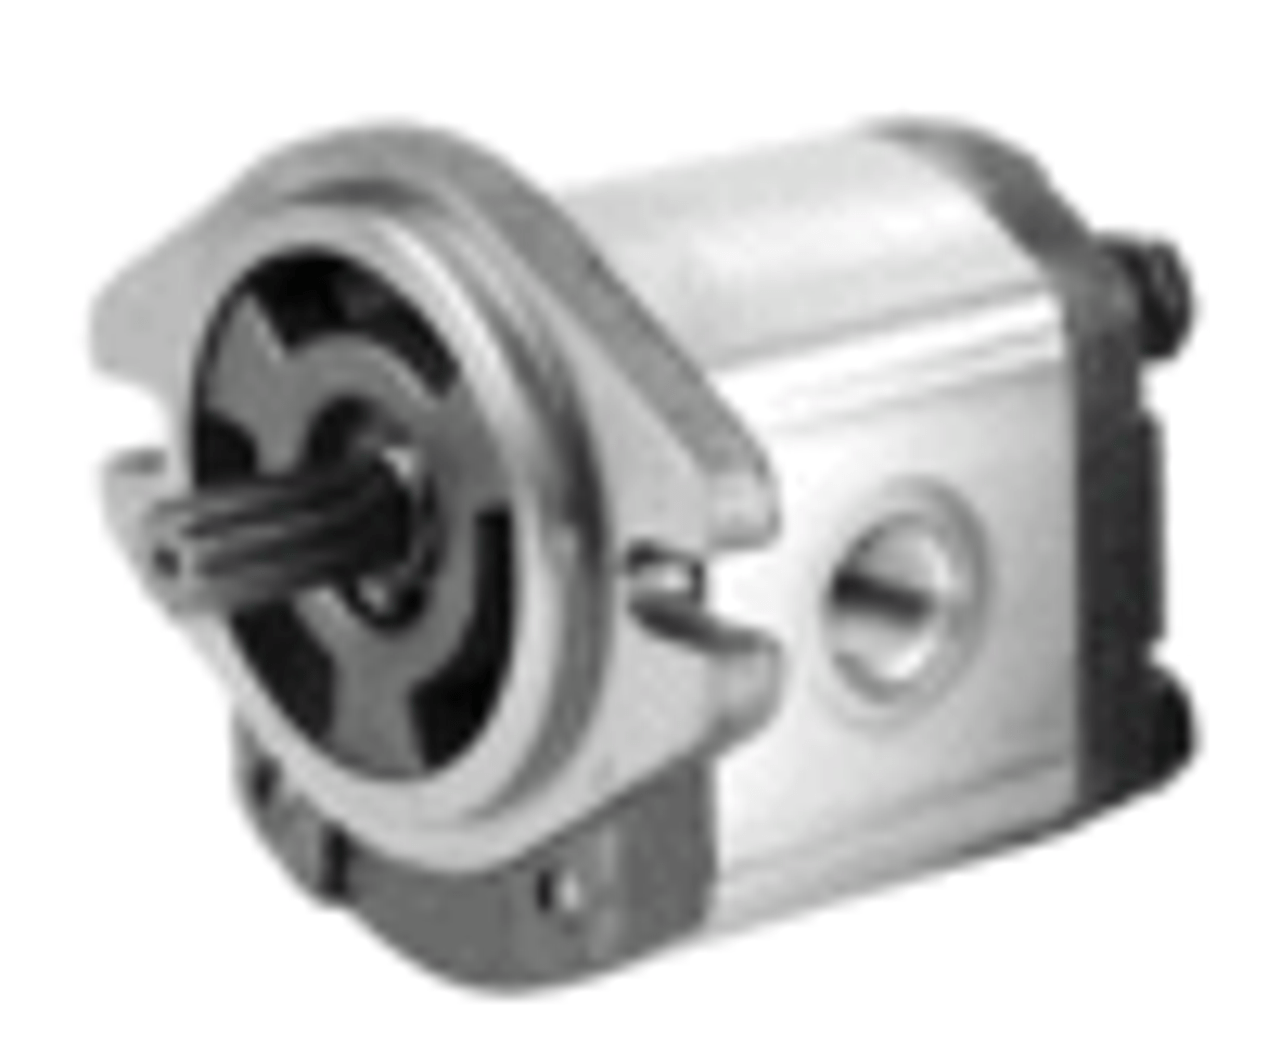 Honor Pumps 2GG2U18R Hydraulic gear pump 1.10 cubic inch displacement 9T spline shaft